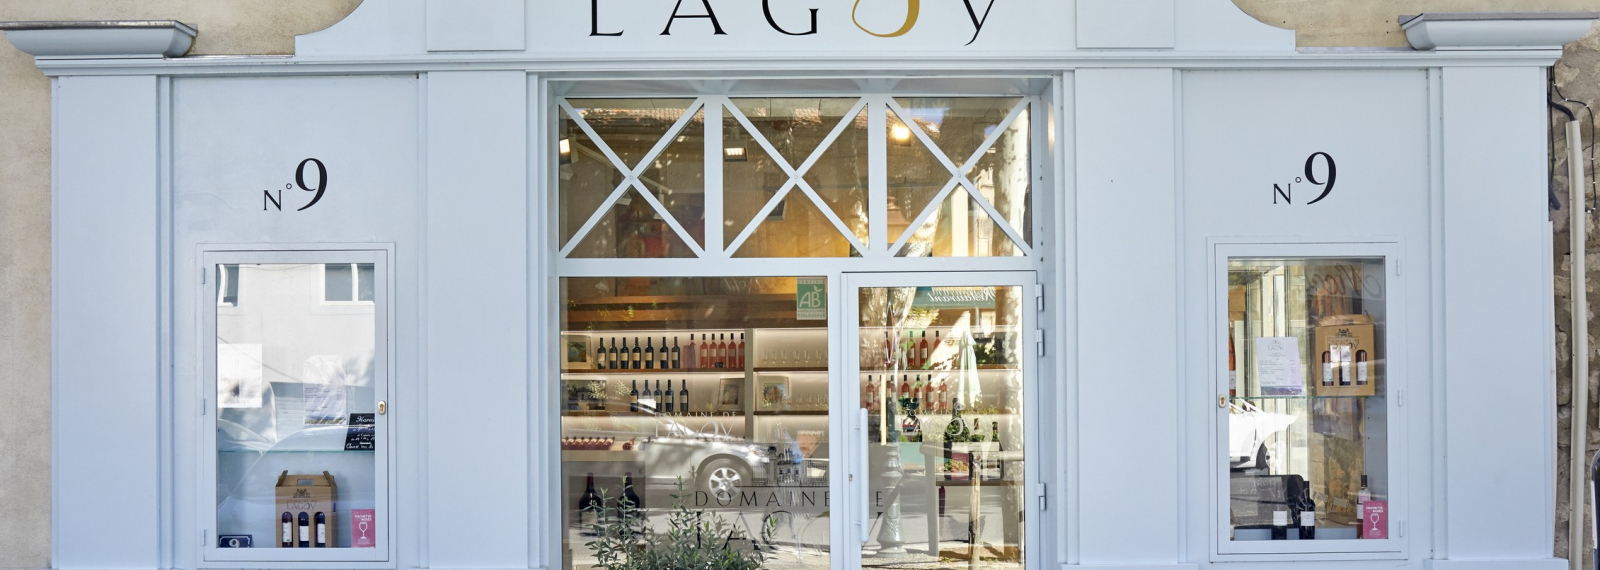 The Domaine de Lagoy shop